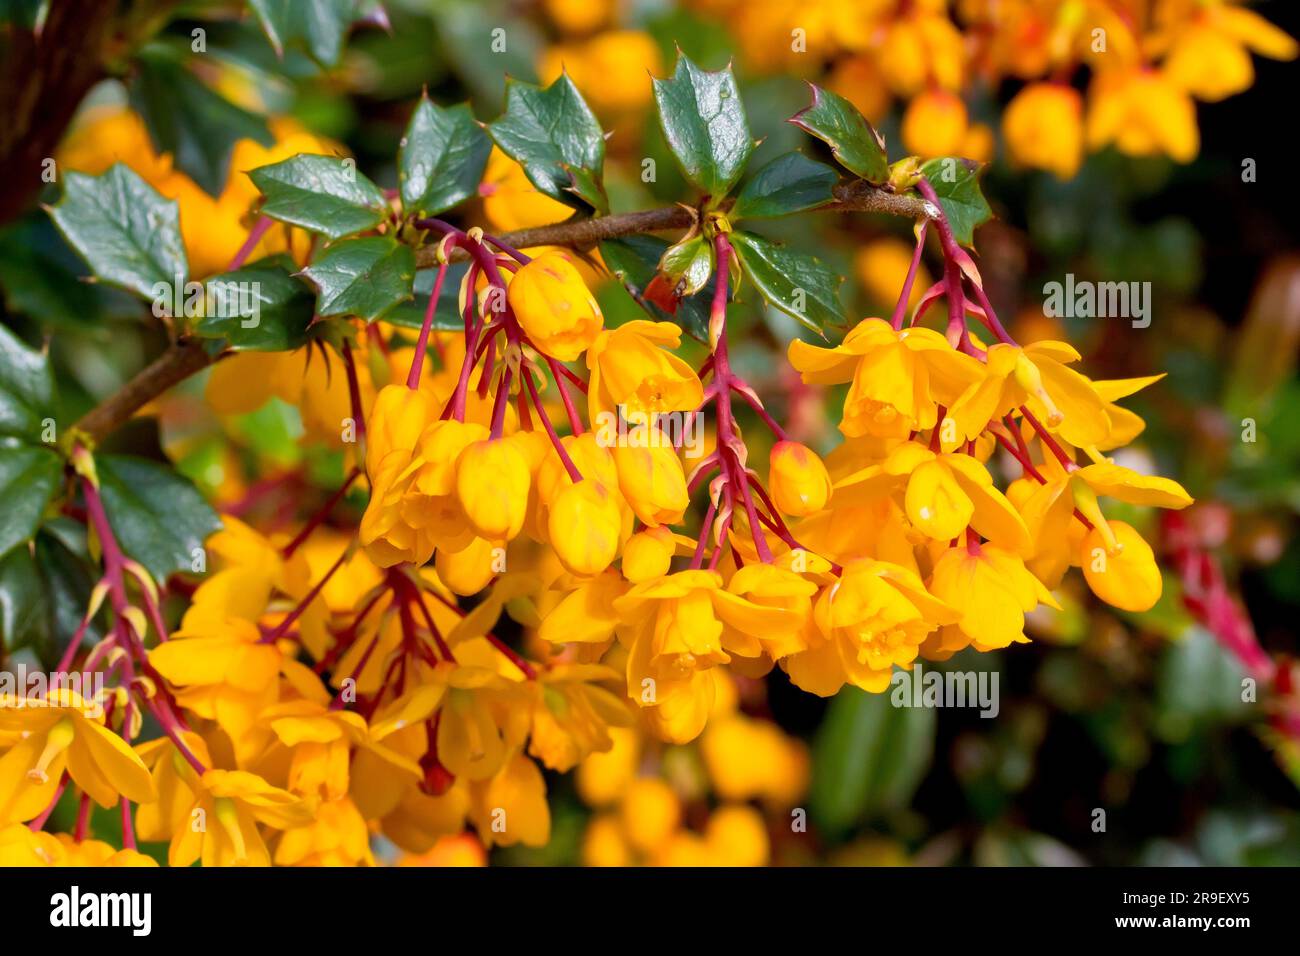 Barberry de Darwin (berberis darwinii), près des fleurs jaune/orange de l'arbuste ornemental couramment planté dans les jardins et les parcs publics. Banque D'Images